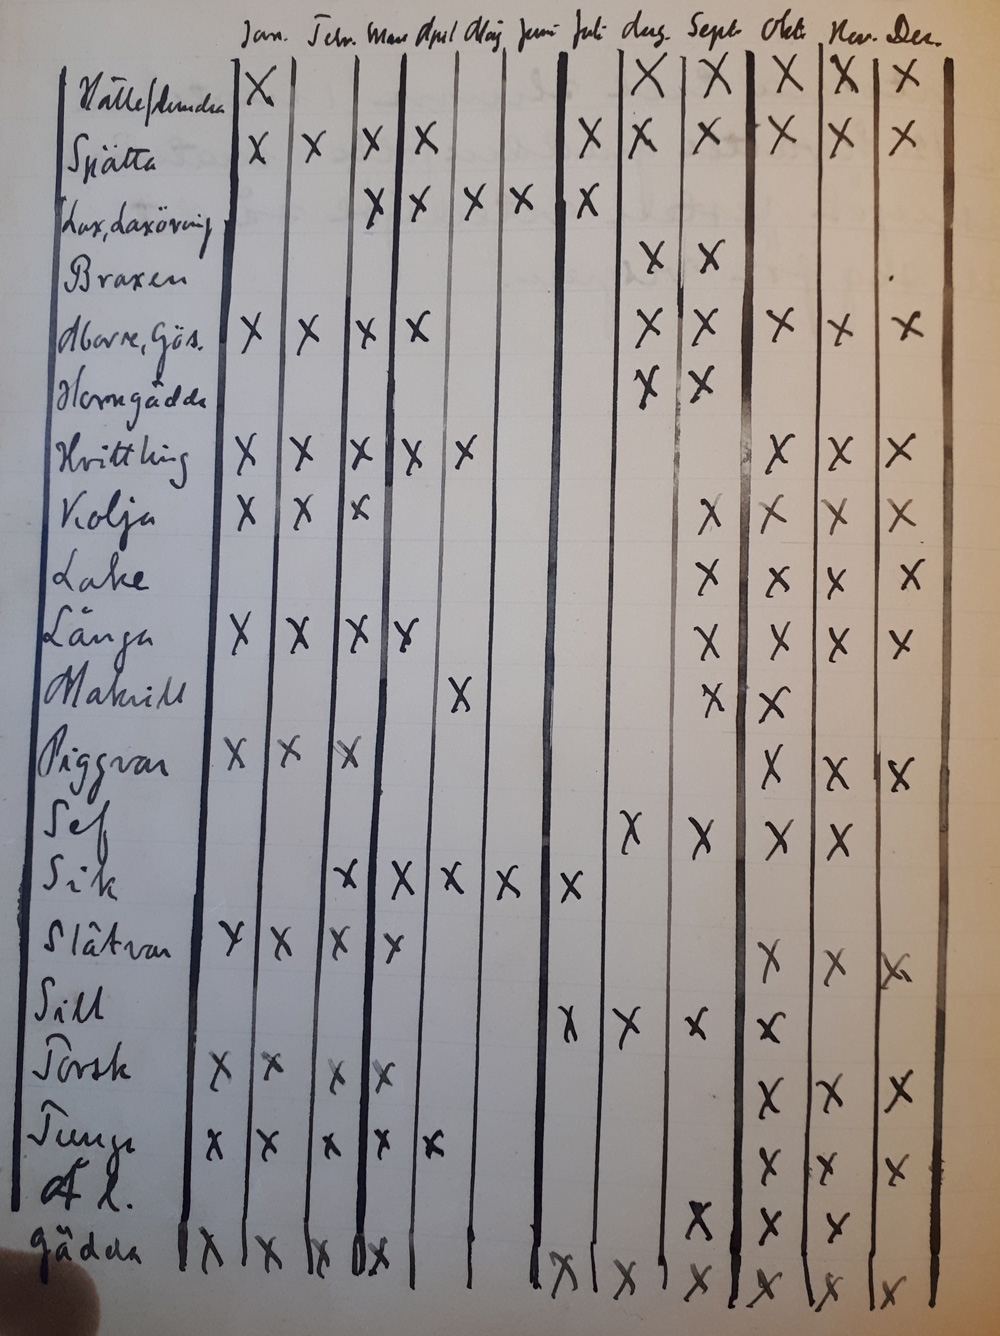 fotografi av handskriven tabell med olika fiskar och ikryssad vilken månad de är aktuella. 